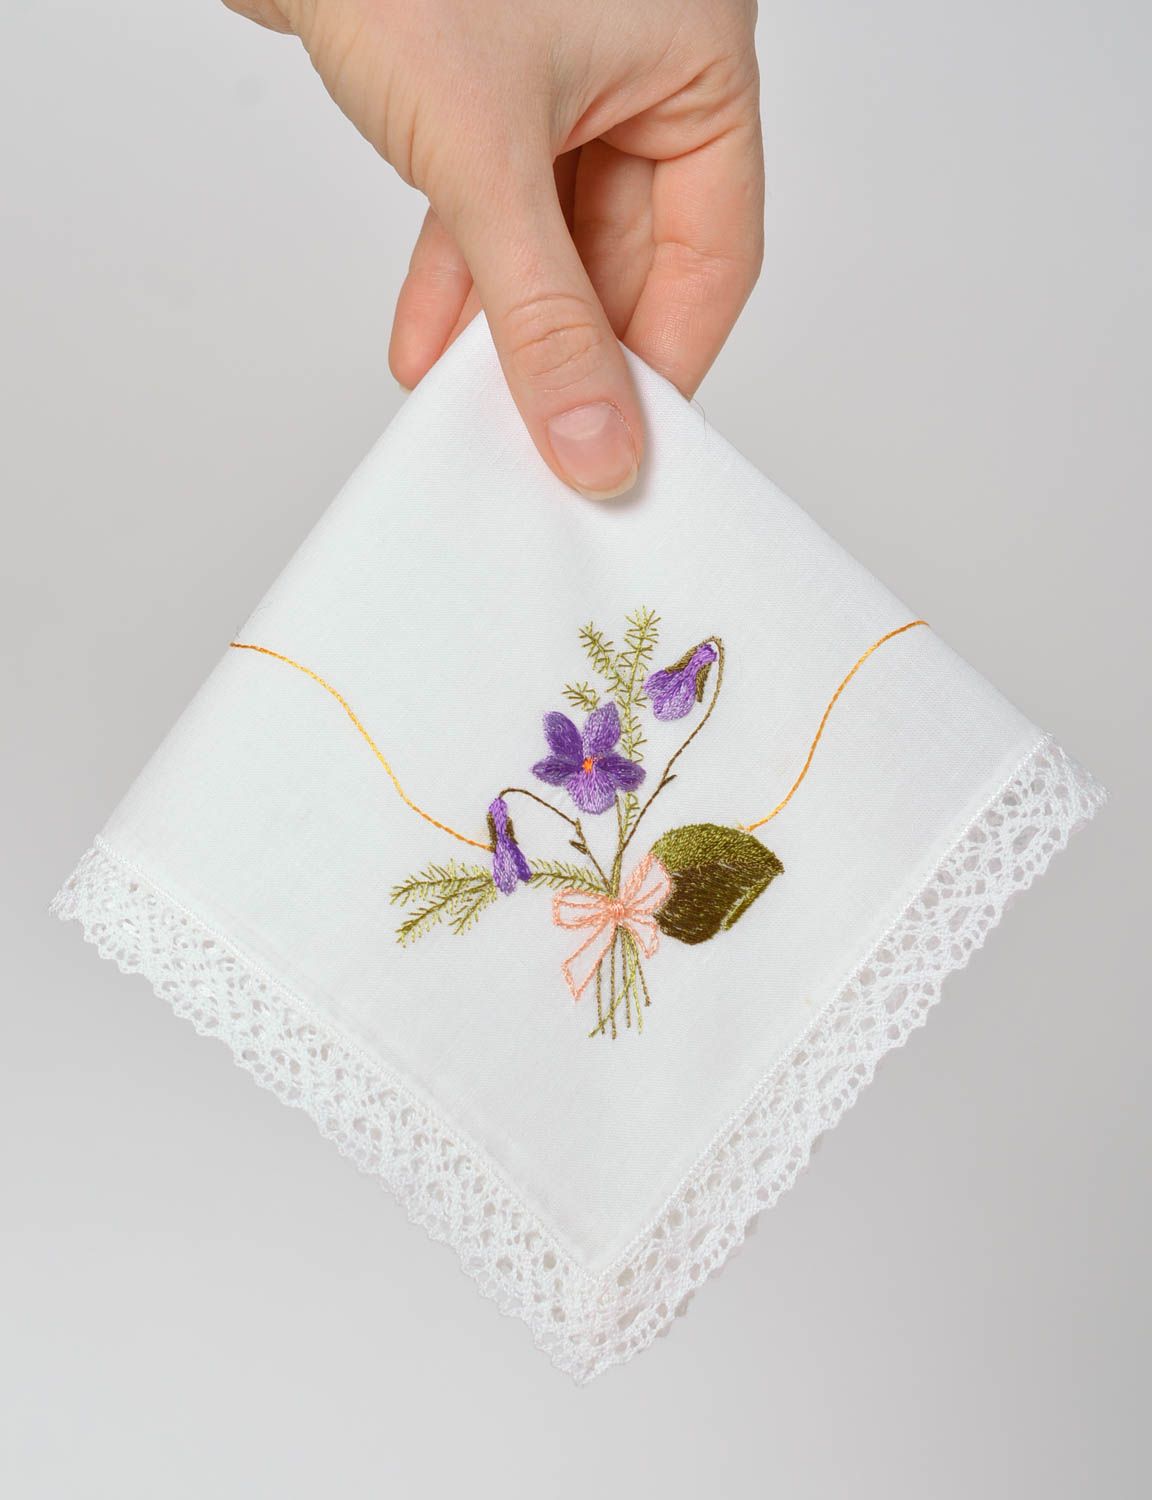 Mouchoir en tissu brodé fait main carré blanc dentelle fleurs Petit cadeau photo 3